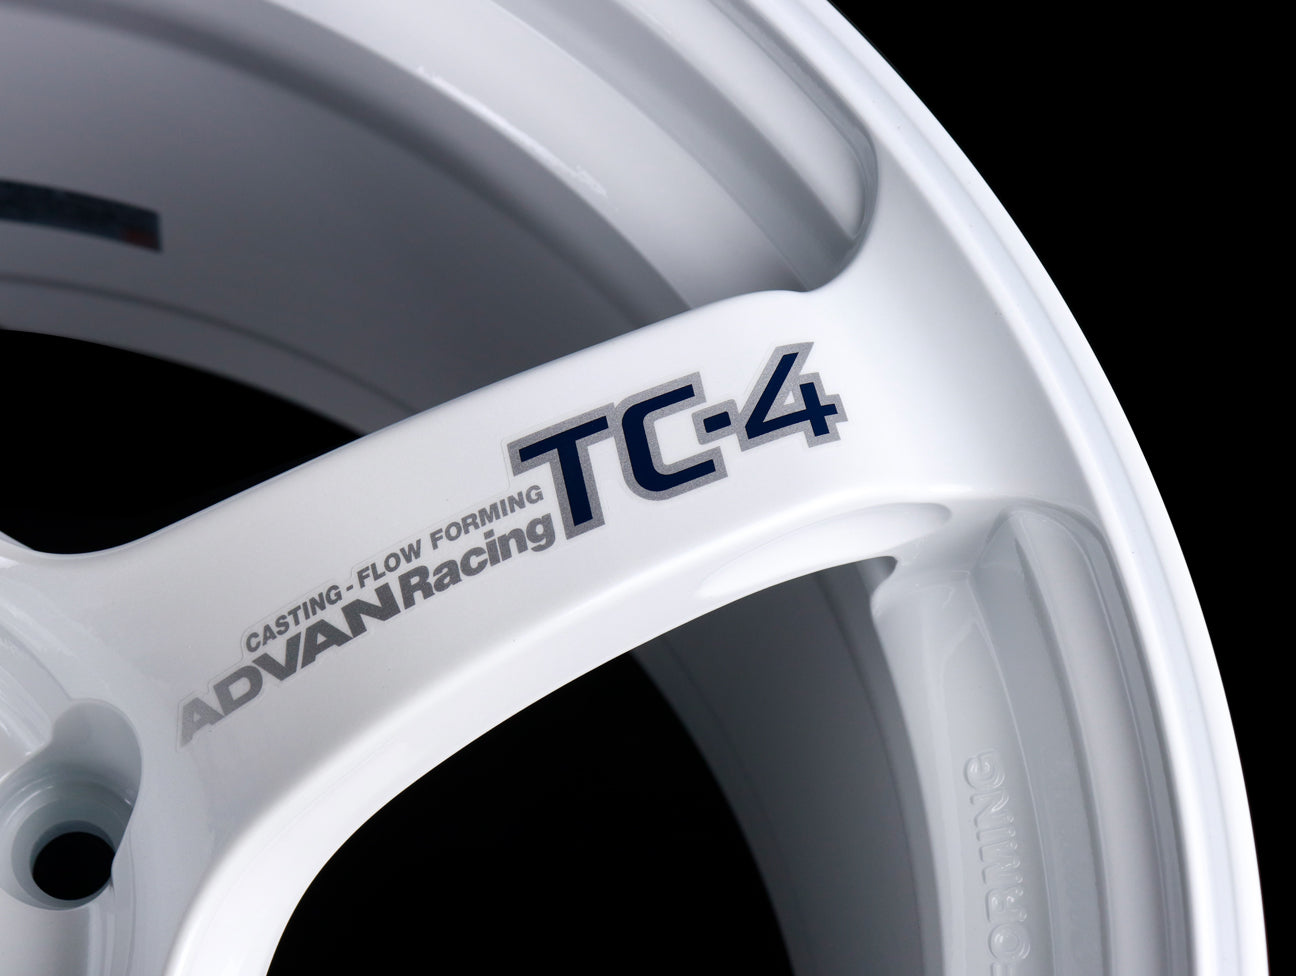 Advan Racing TC4 Wheels - White / 16x8 / 4x100 / +38